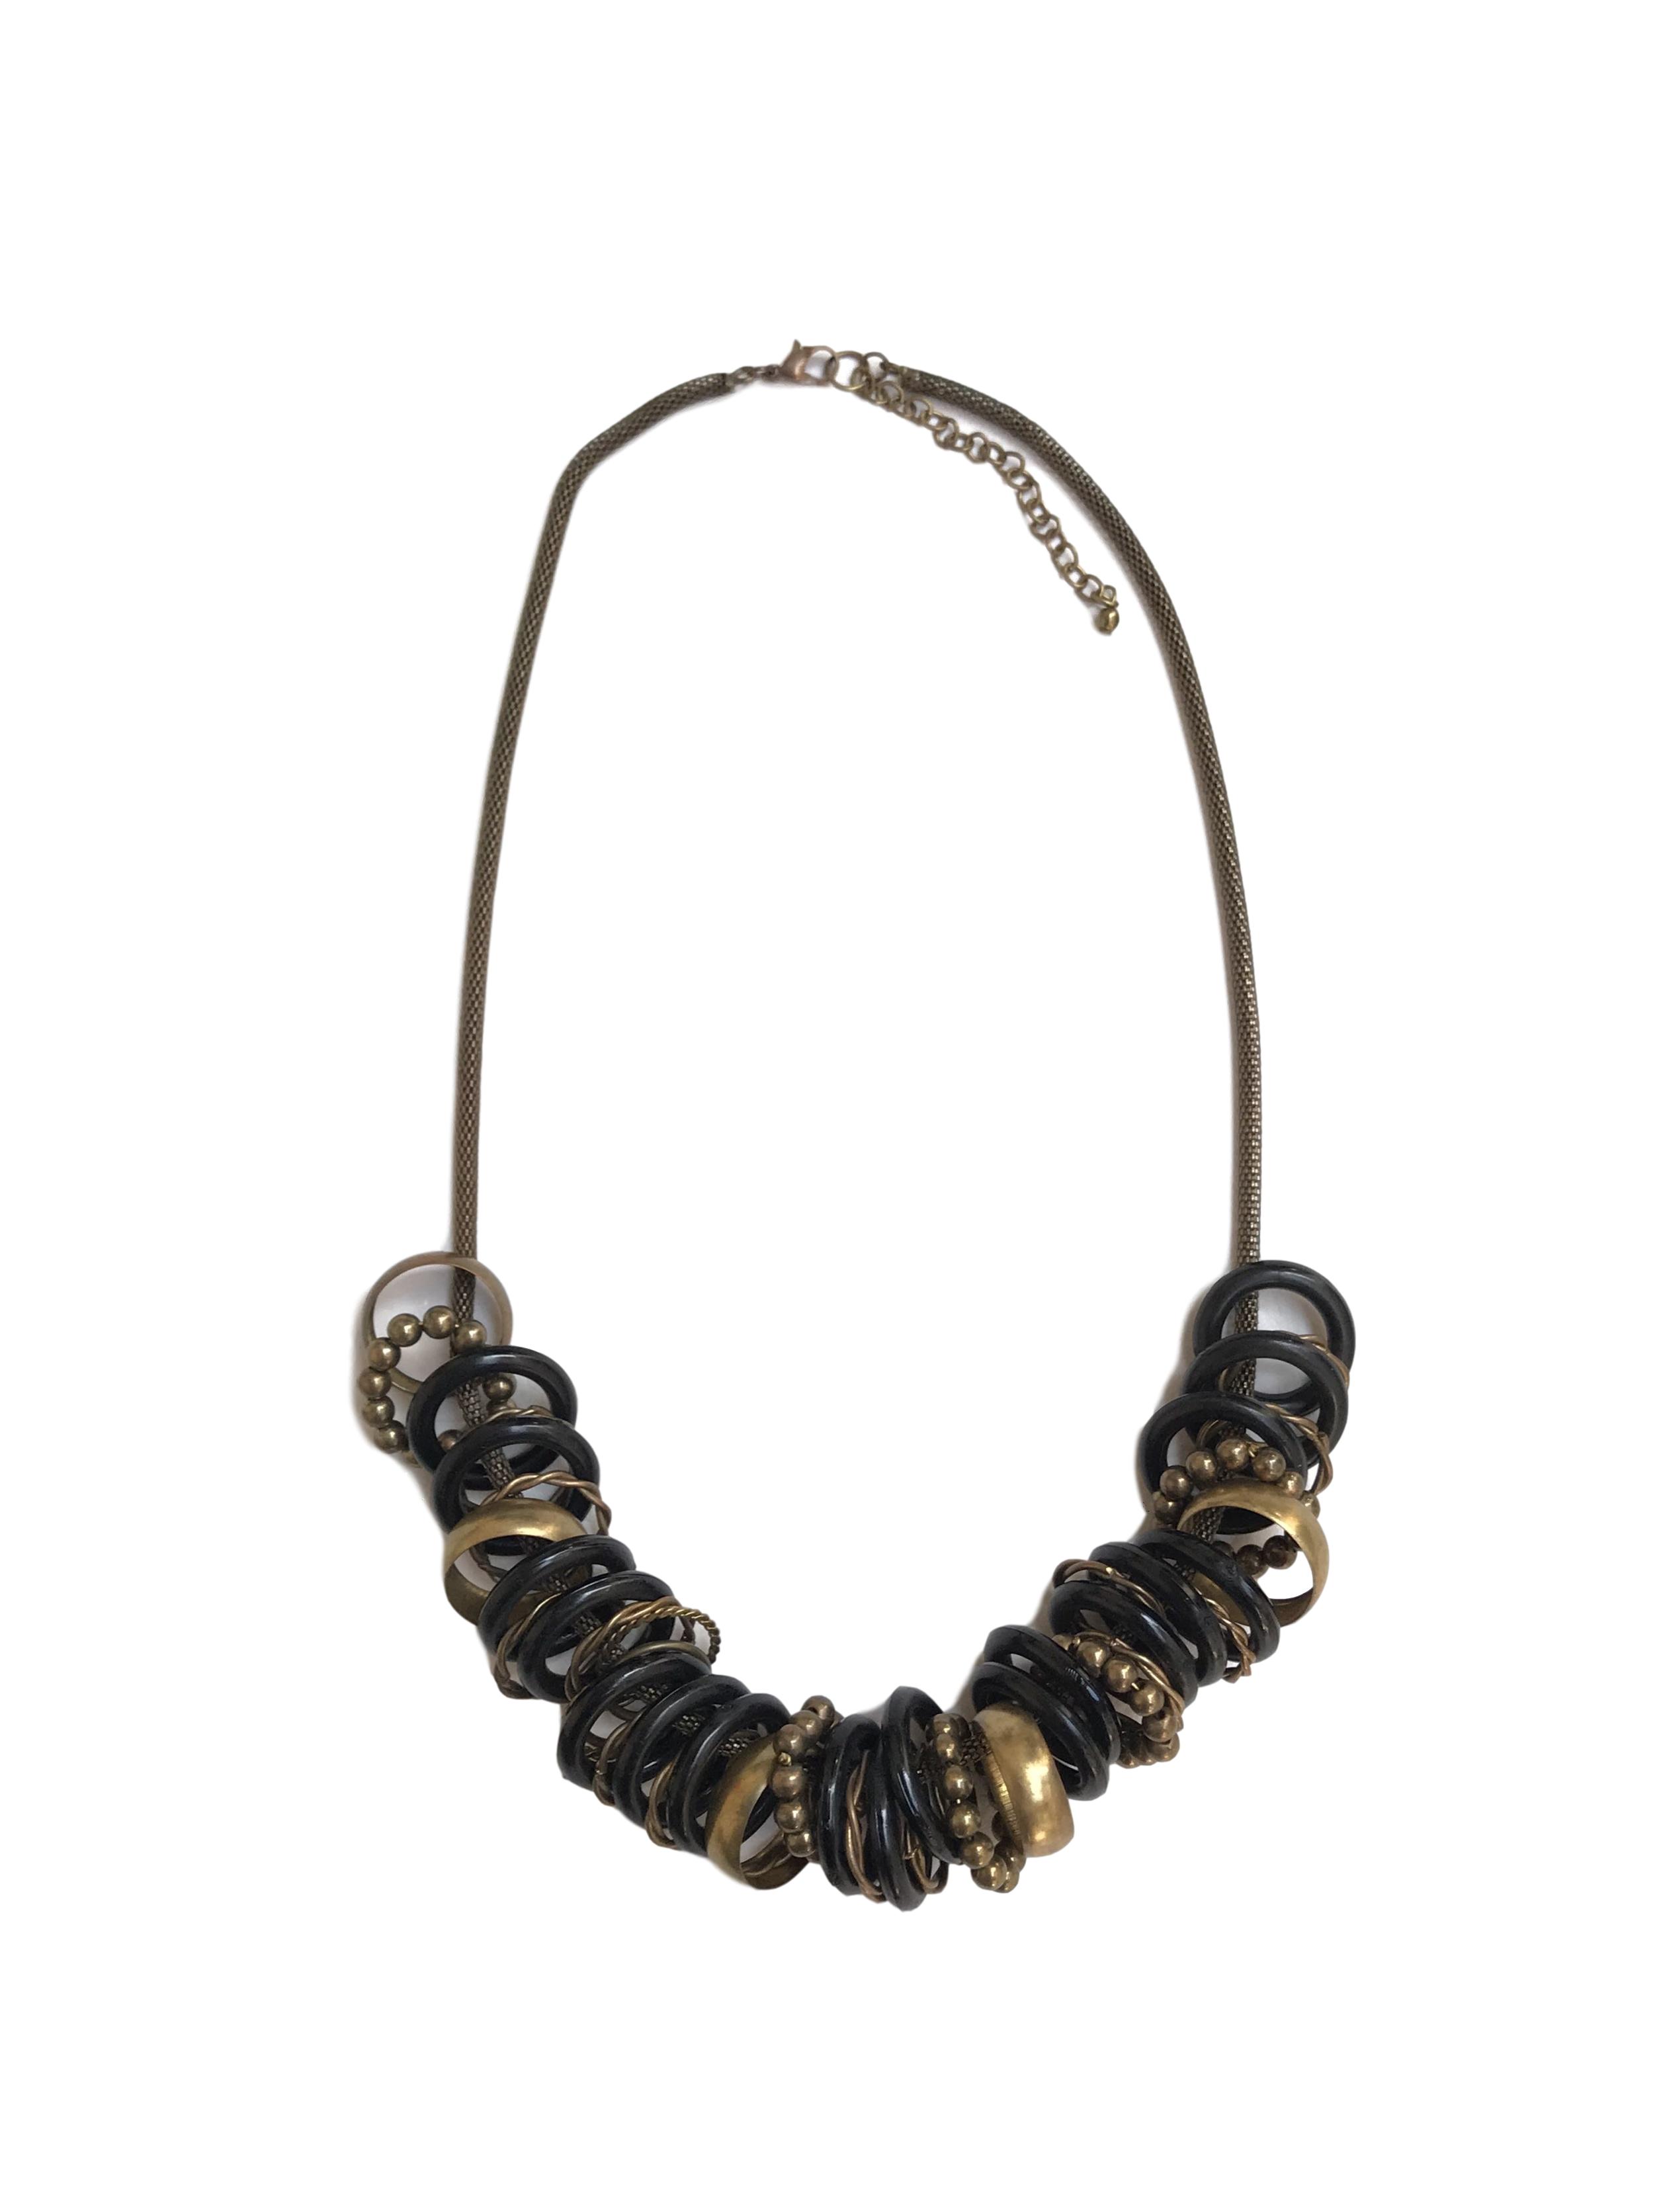 Collar cadena cilíndrica en tono oro viejo, dijes tipo aros negros y dorados. Largo 65cm (+8cm regulables)